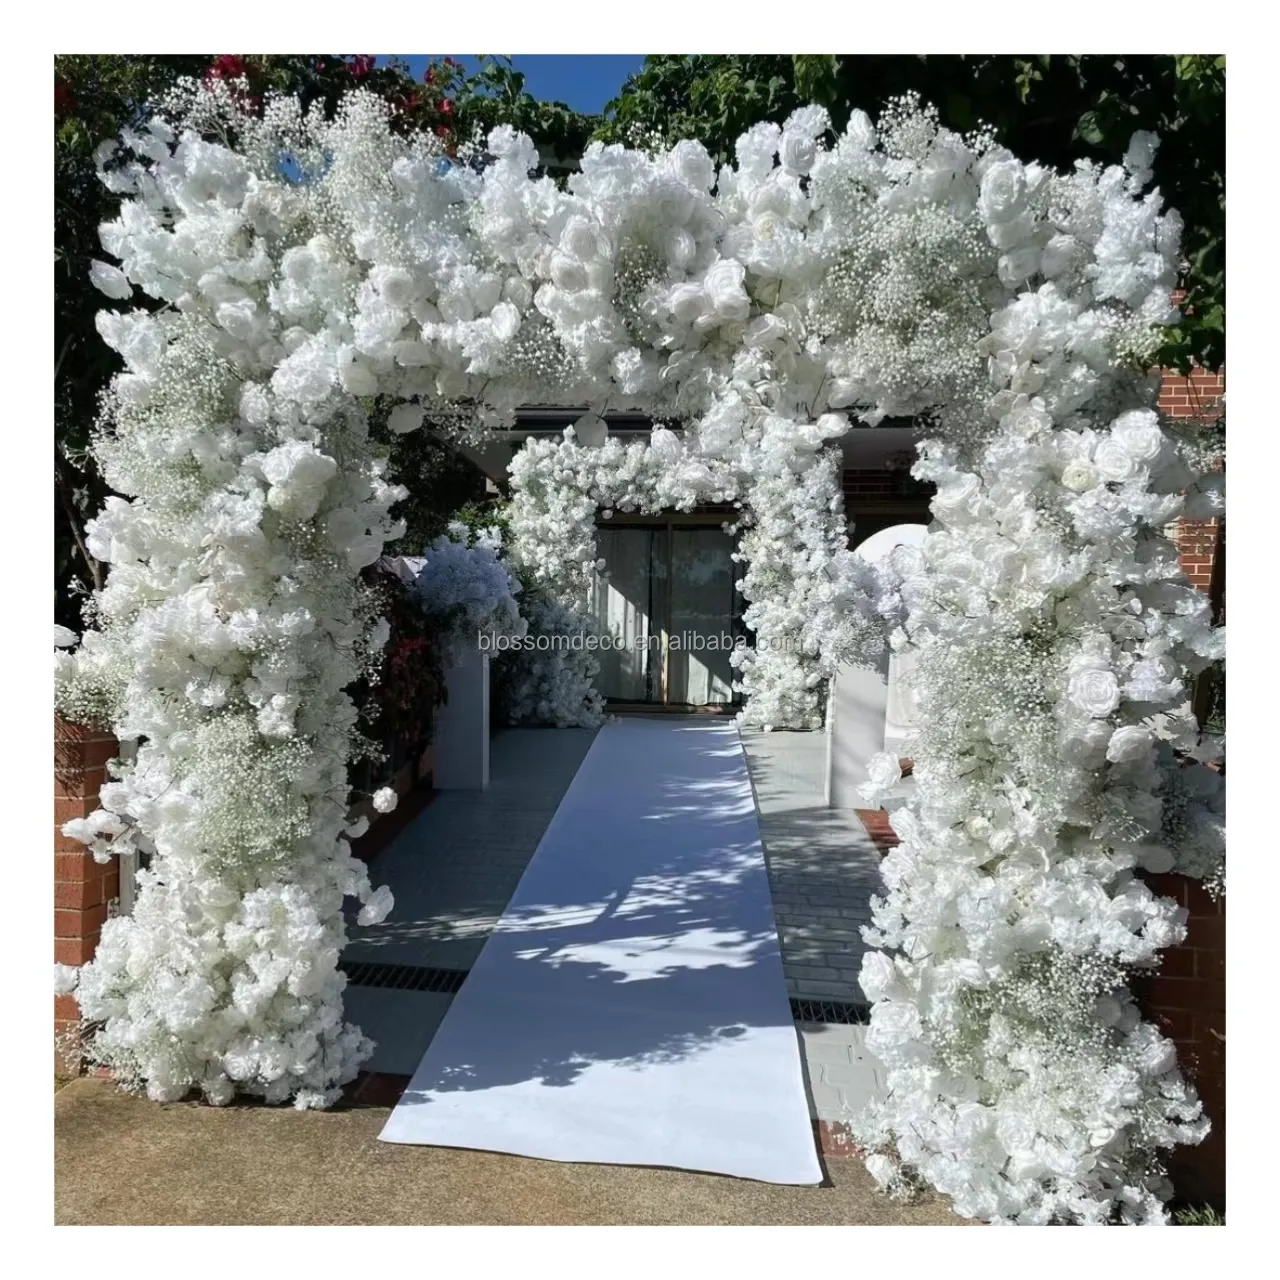 Desain bunga kustom lingkaran bulat dekorasi panggung pernikahan bunga putih lengkungan bunga untuk panggung dekorasi pernikahan